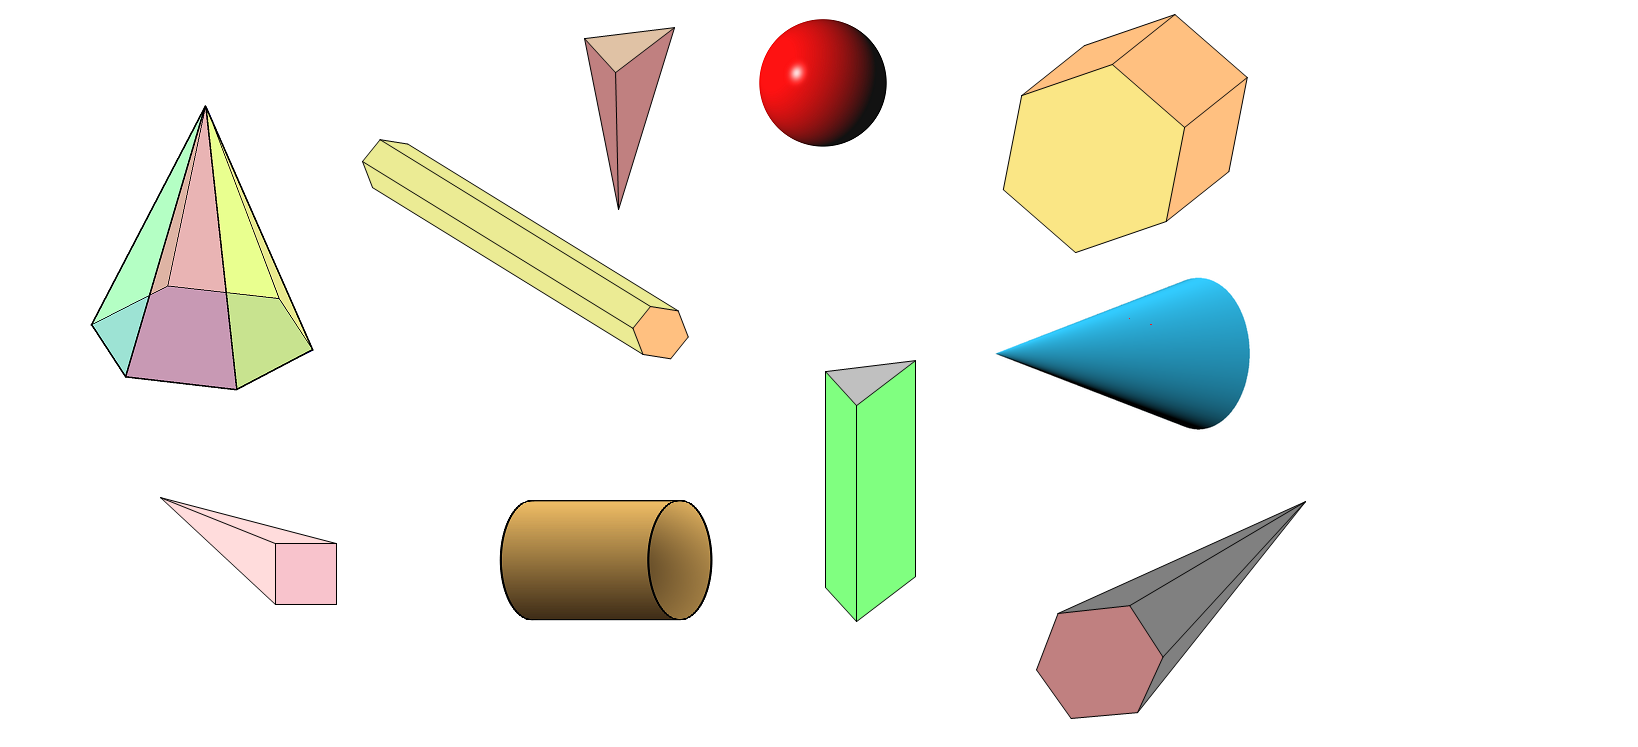 Slika prikazuje skupinu geometrijskih tijela.